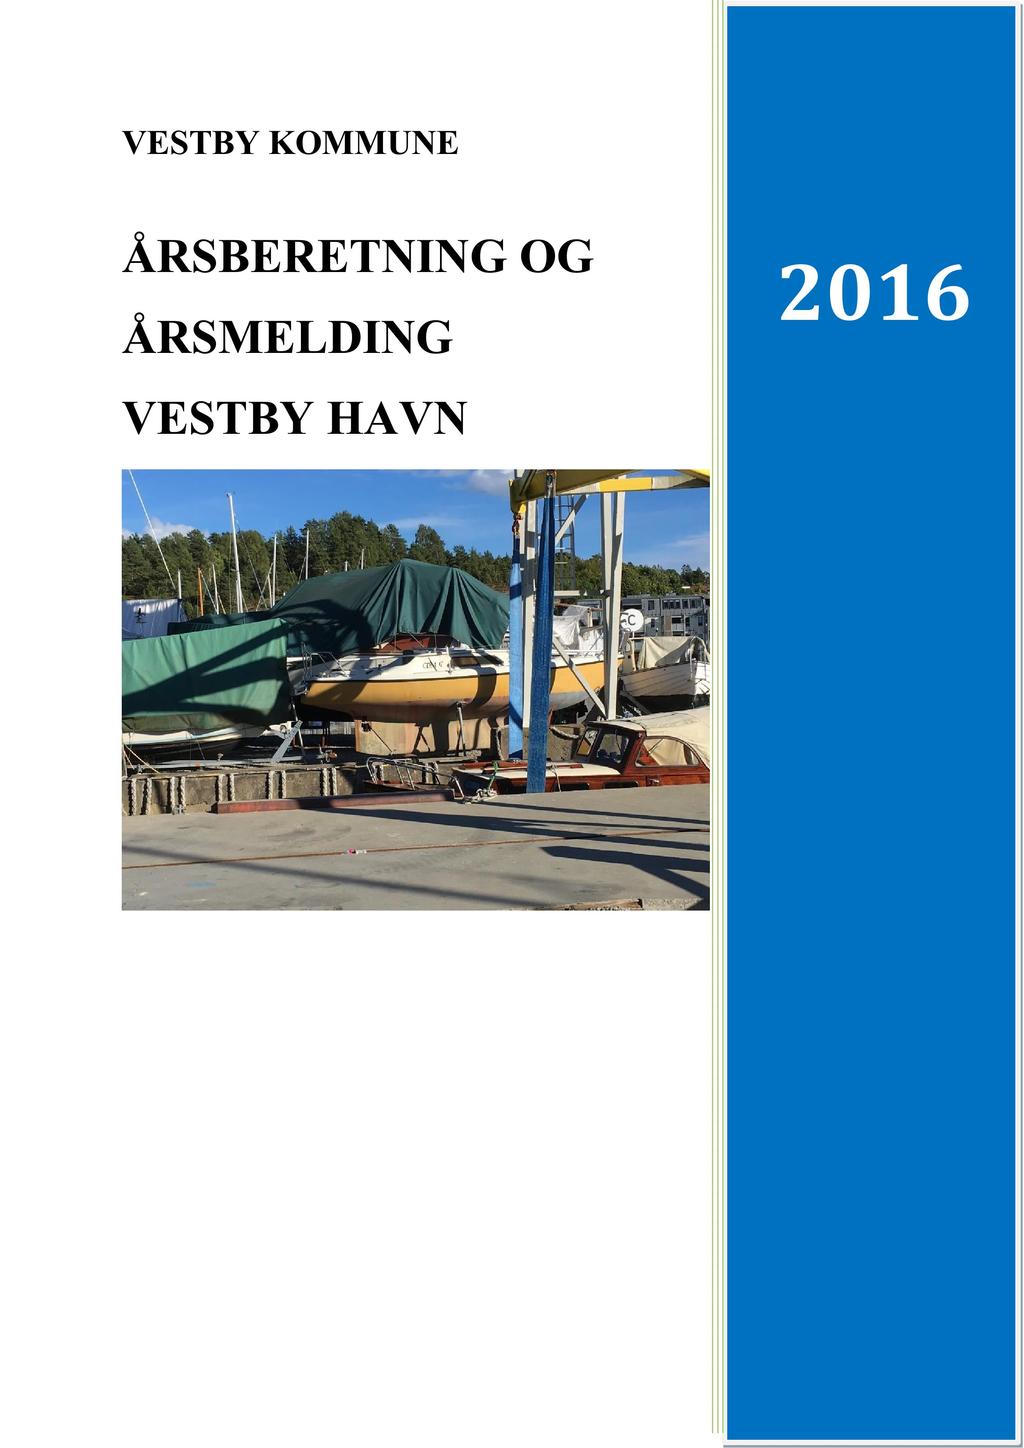 13/17 Vestby havn - årsregnskap og årsberetning 2016-17/00140-1 Vestby havn - årsregnskap og årsberetning 2016